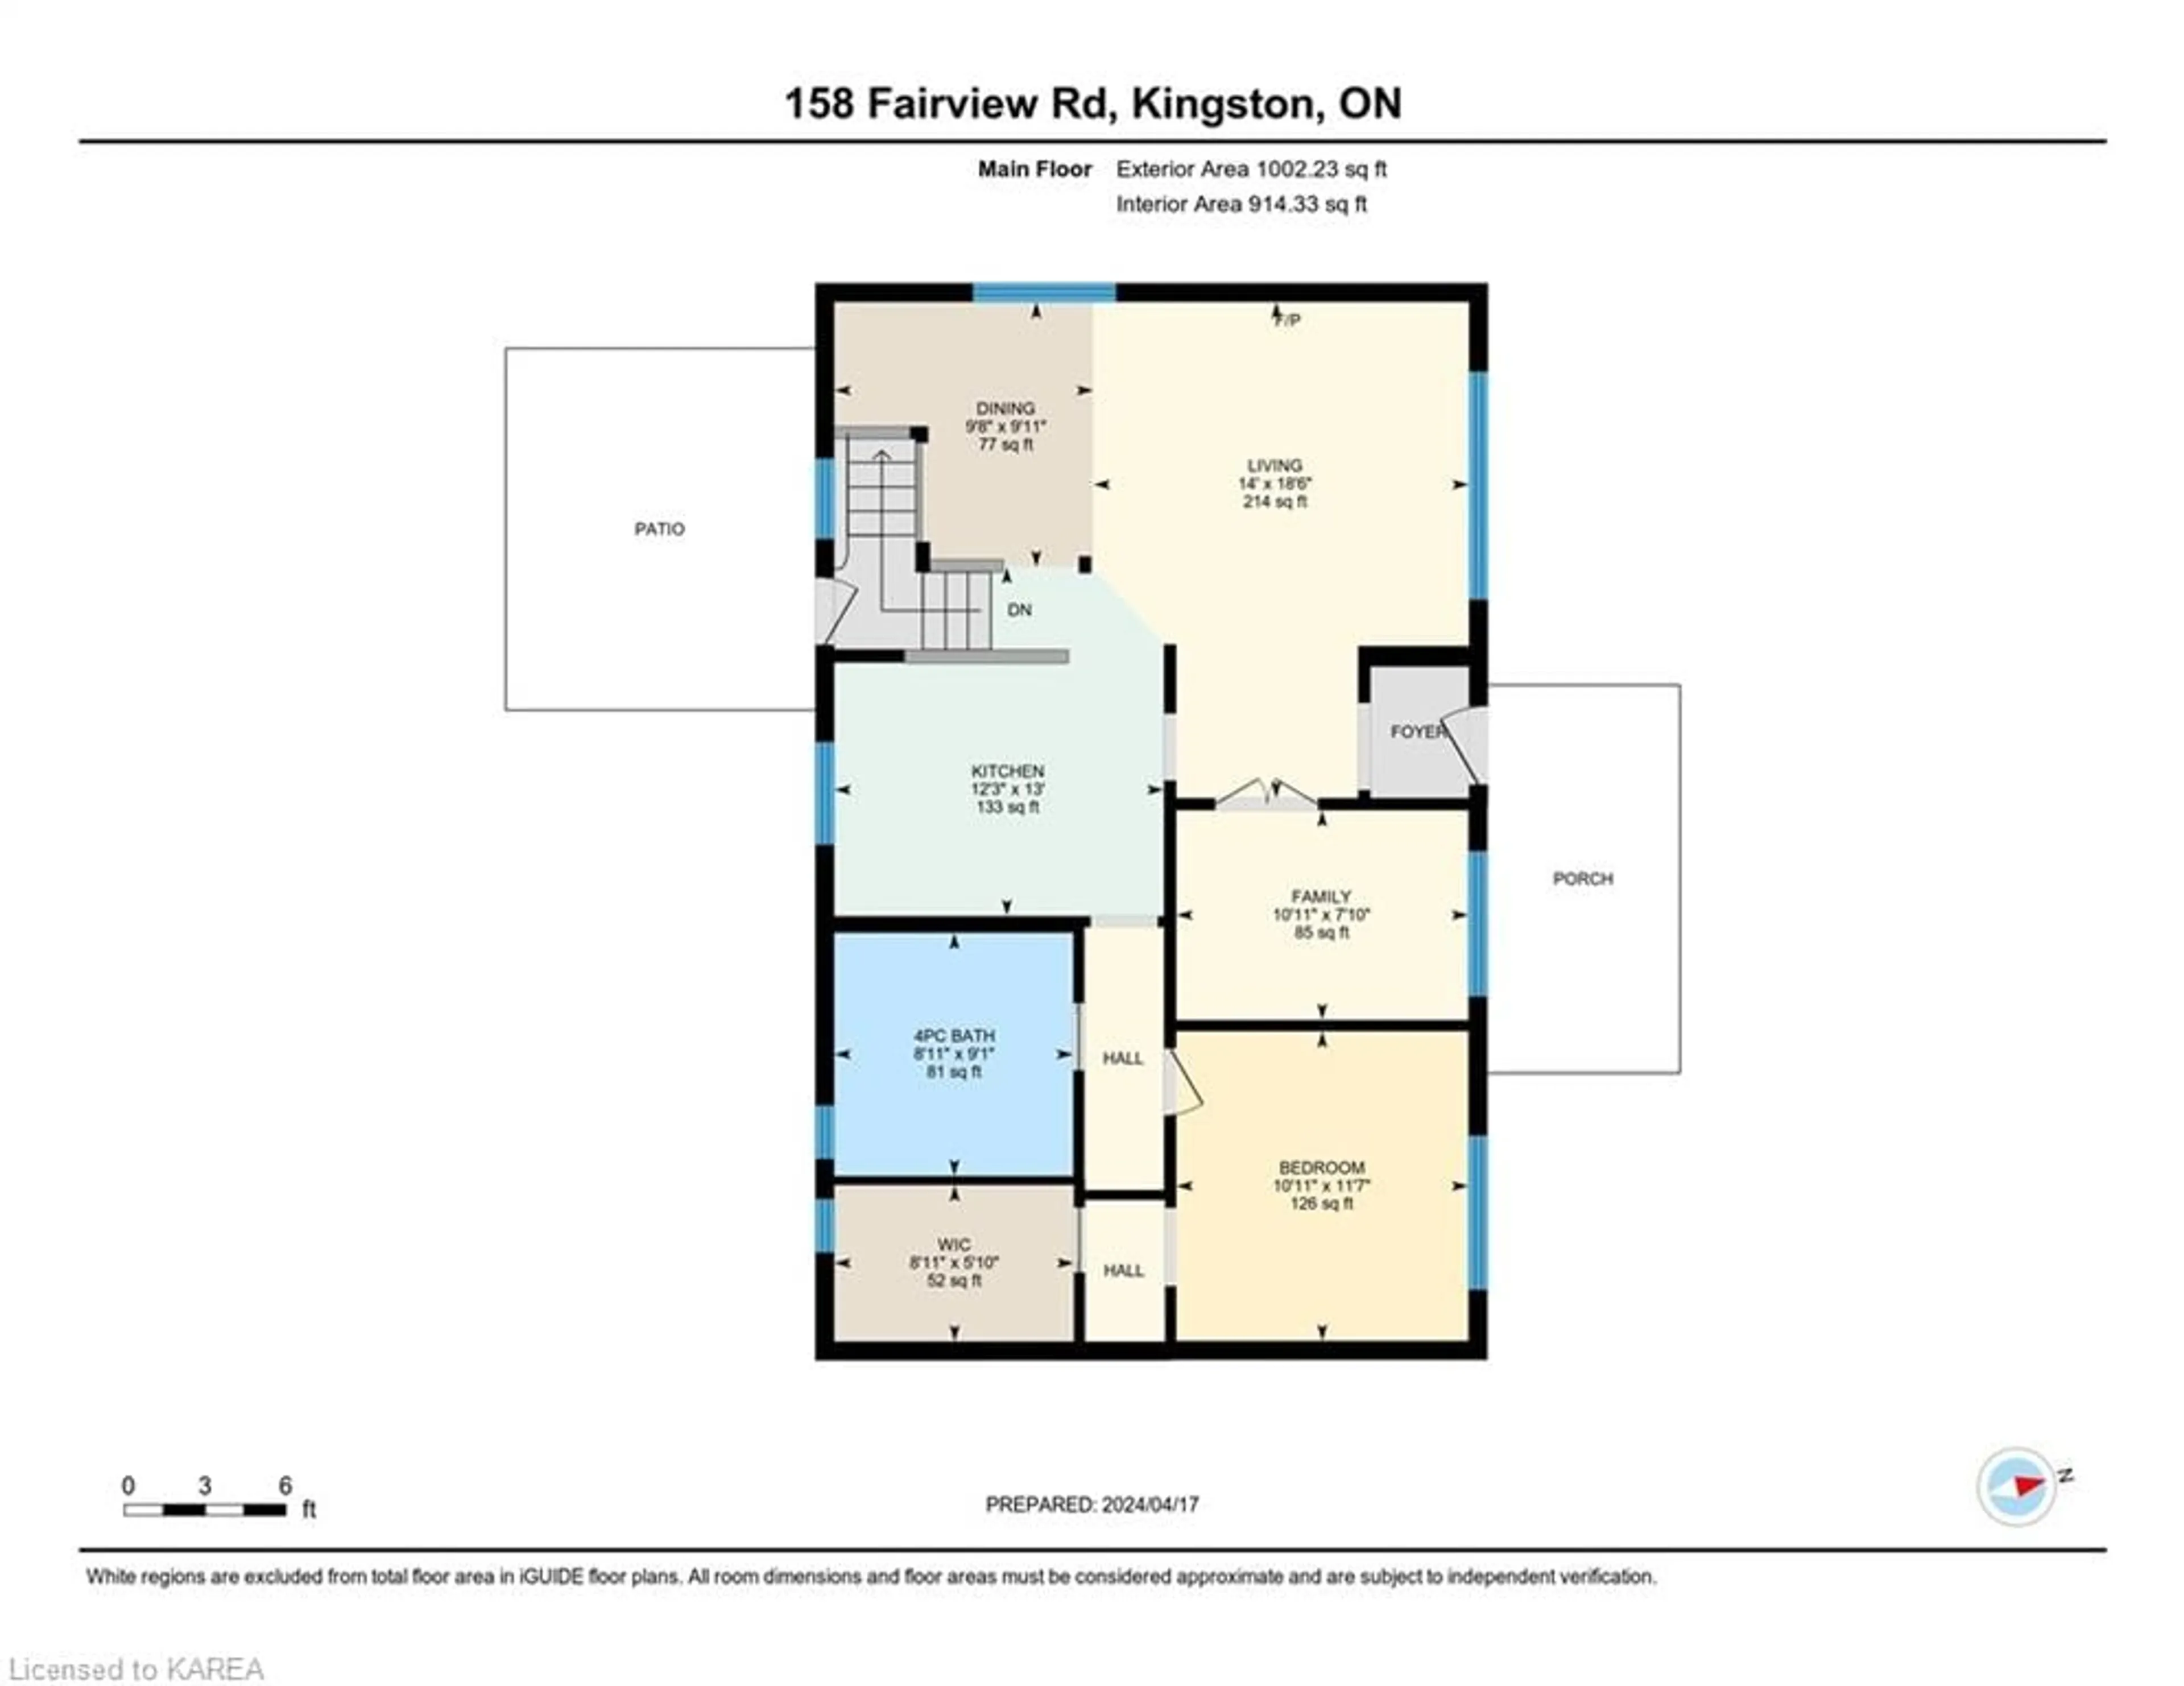 Floor plan for 158 Fairview Rd, Kingston Ontario K7M 3B1